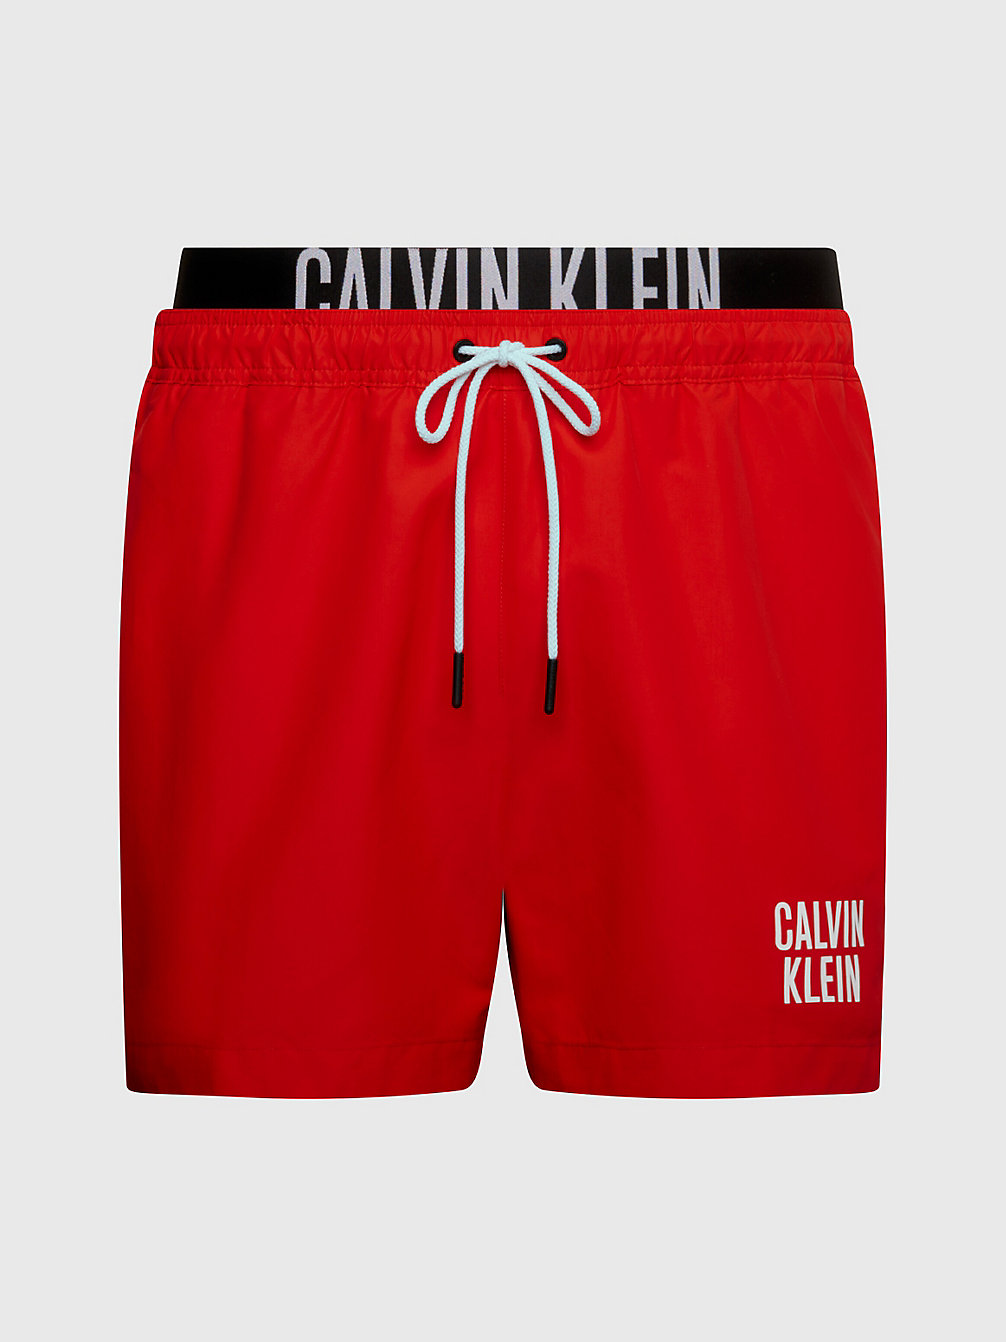 CAJUN RED Badeshorts Mit Doppeltem Bund - Intense Power undefined Herren Calvin Klein